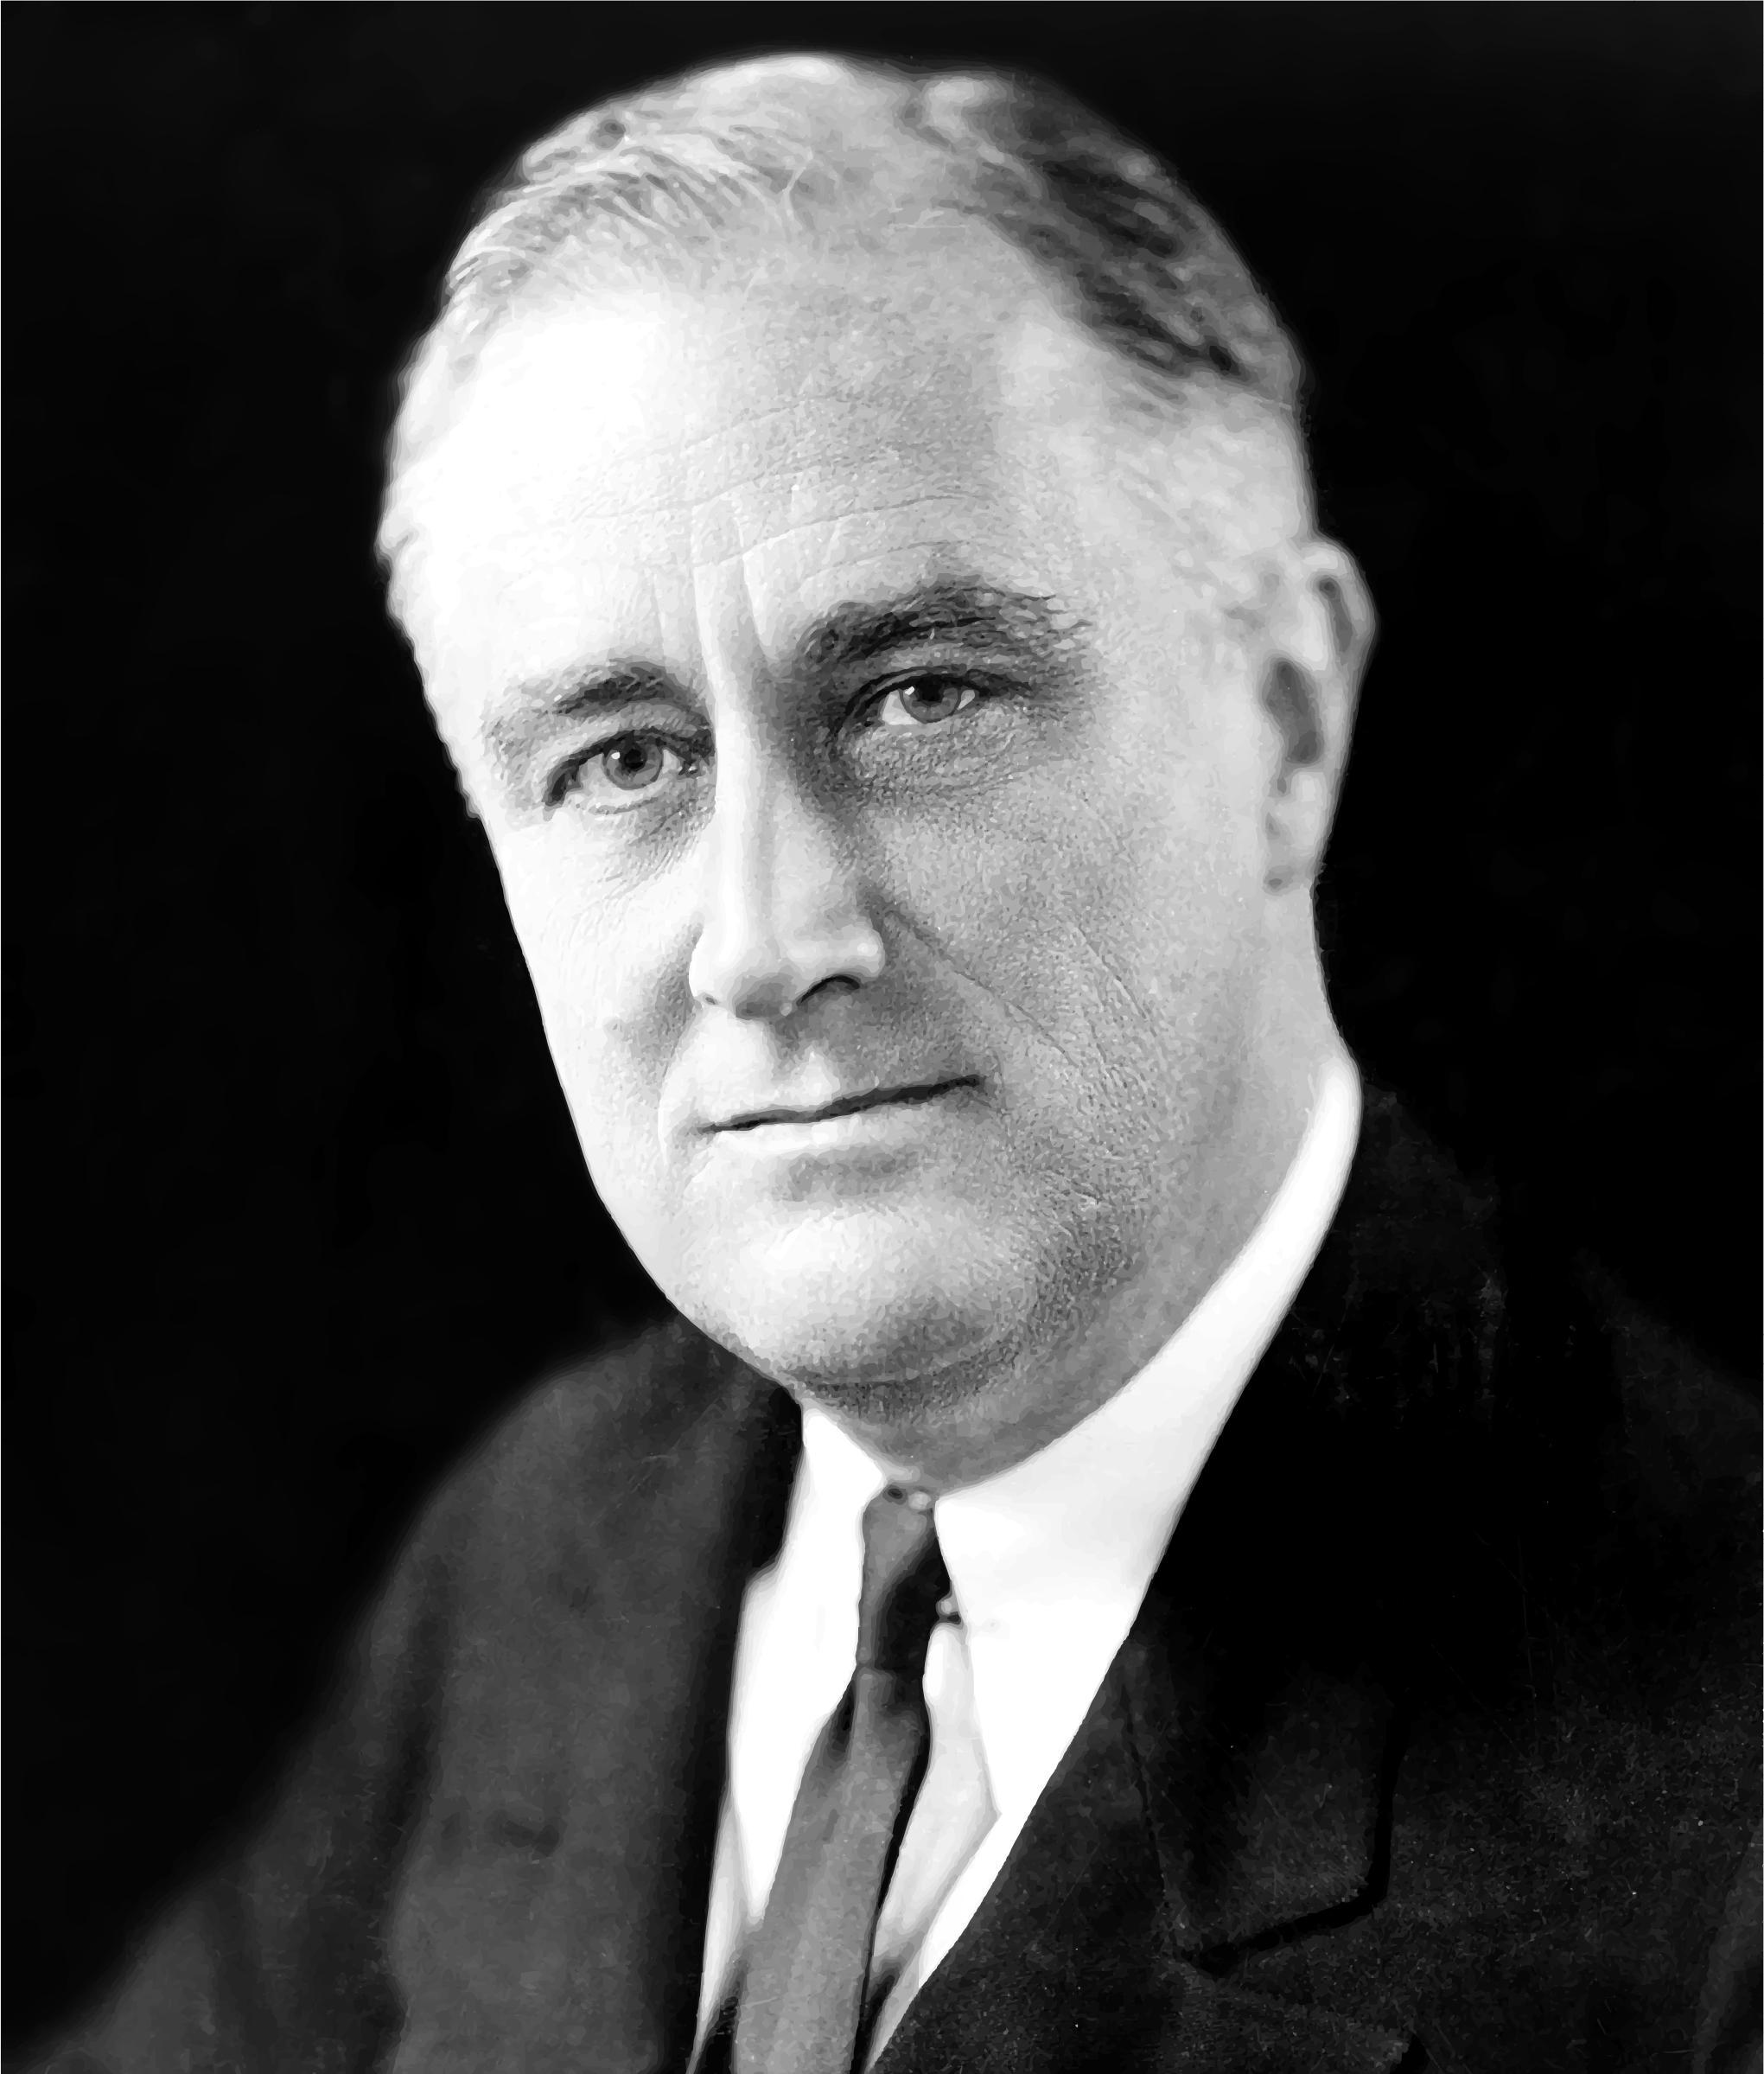 FDR (Franklin Delano Roosevelt) Portrait png